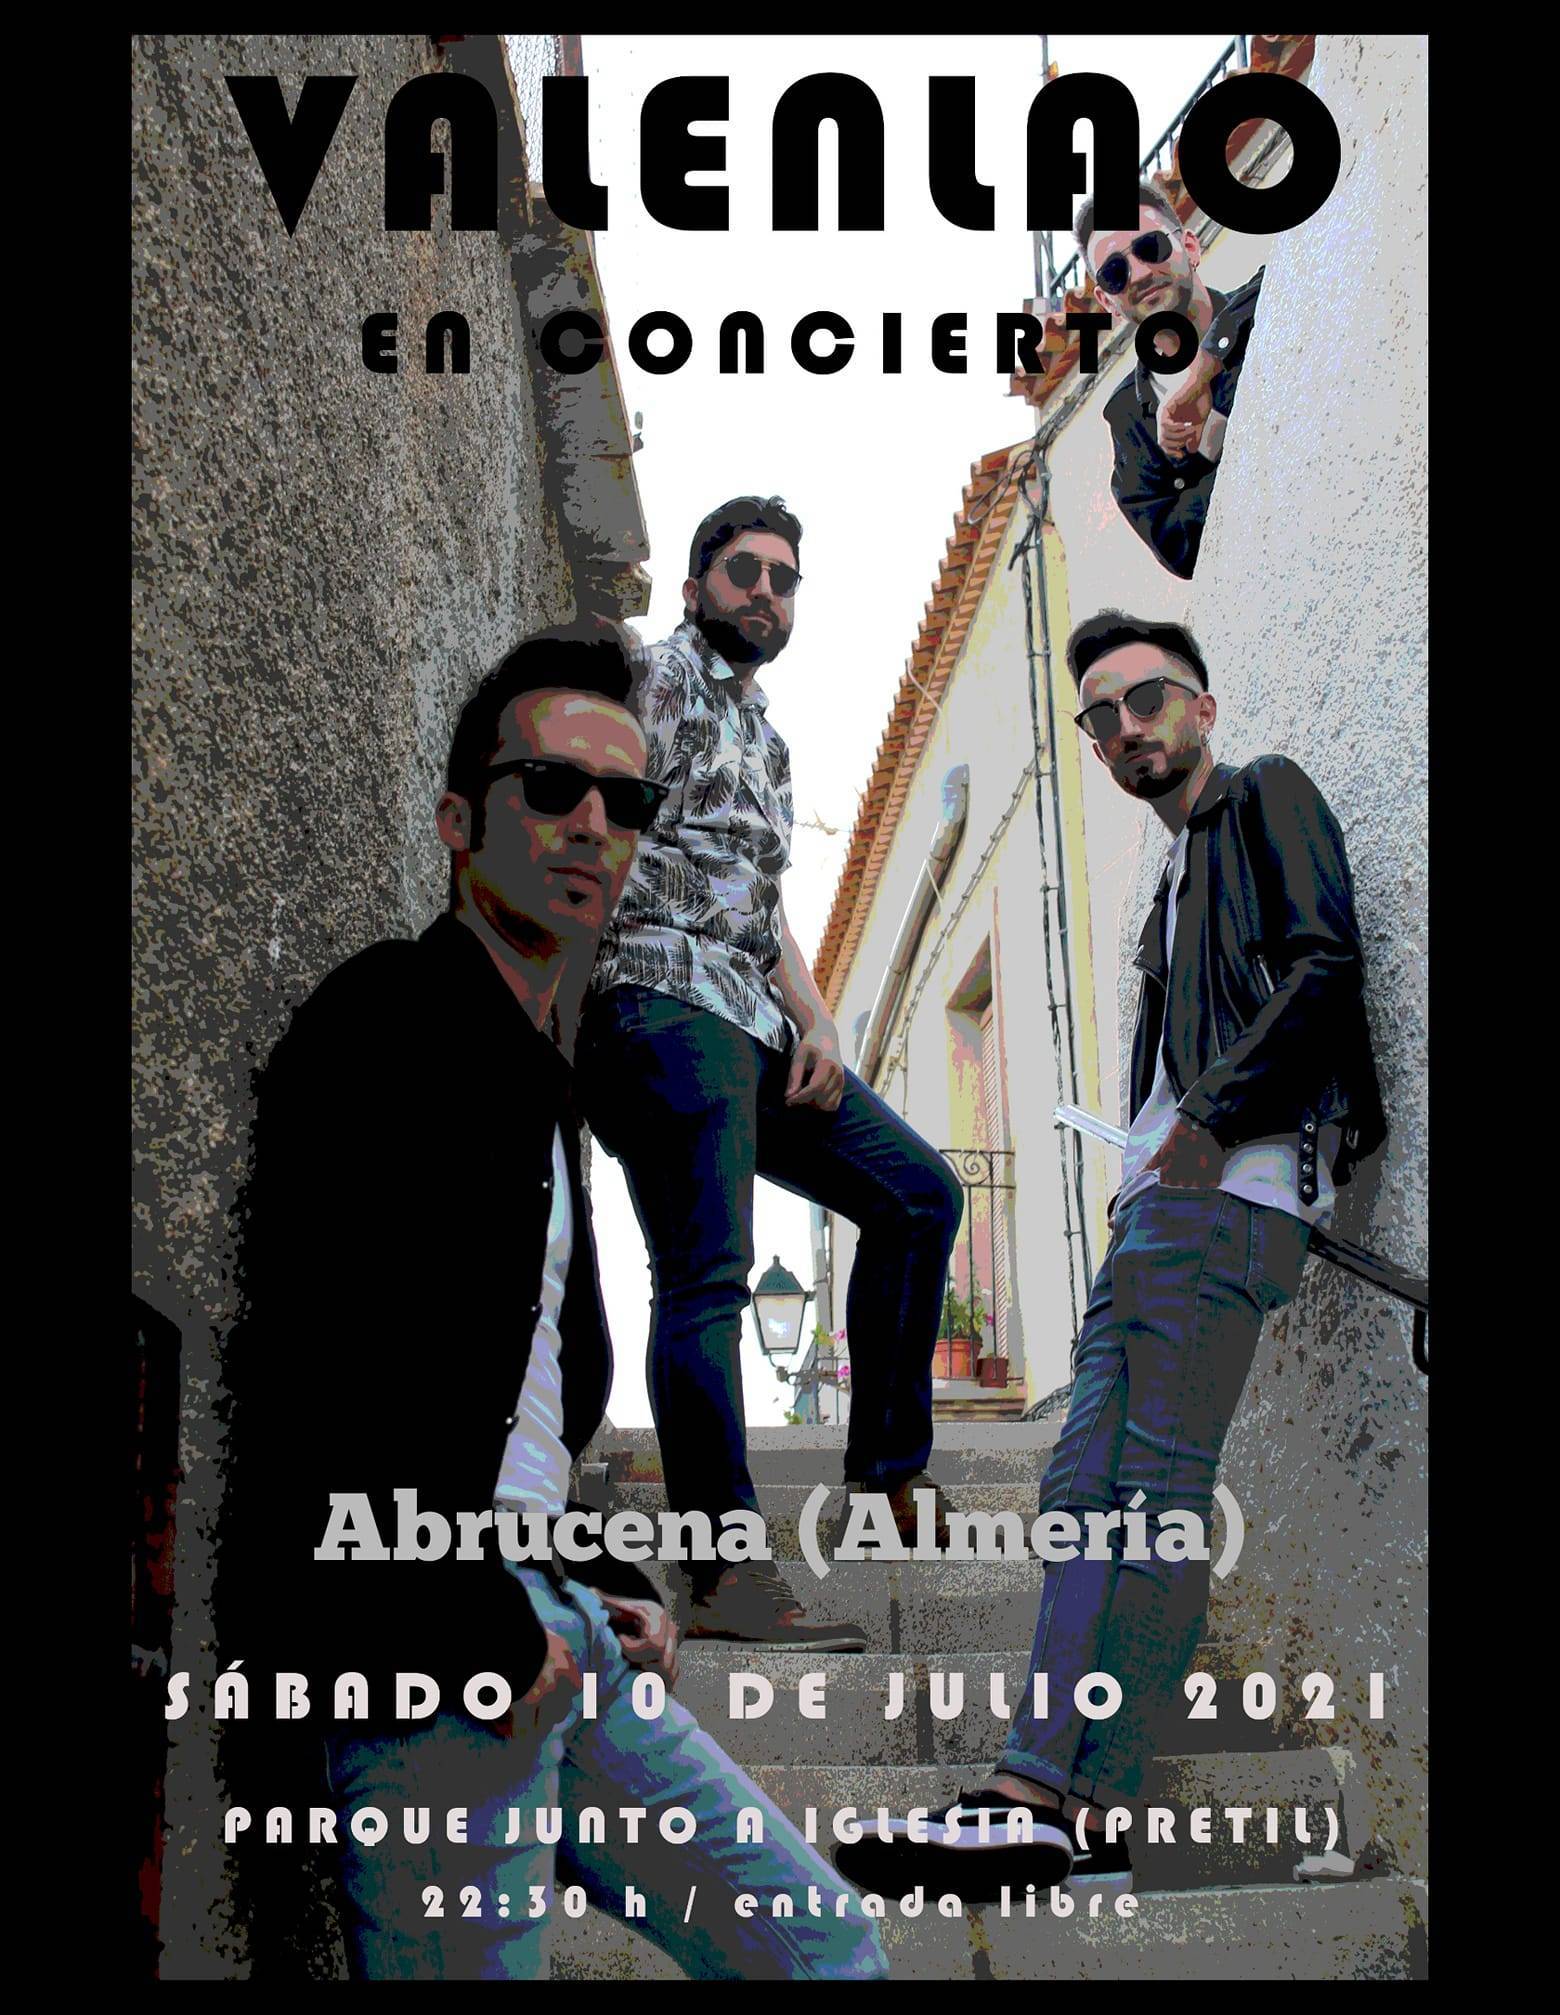 Valenlao en concierto (2021) - Abrucena (Almería)